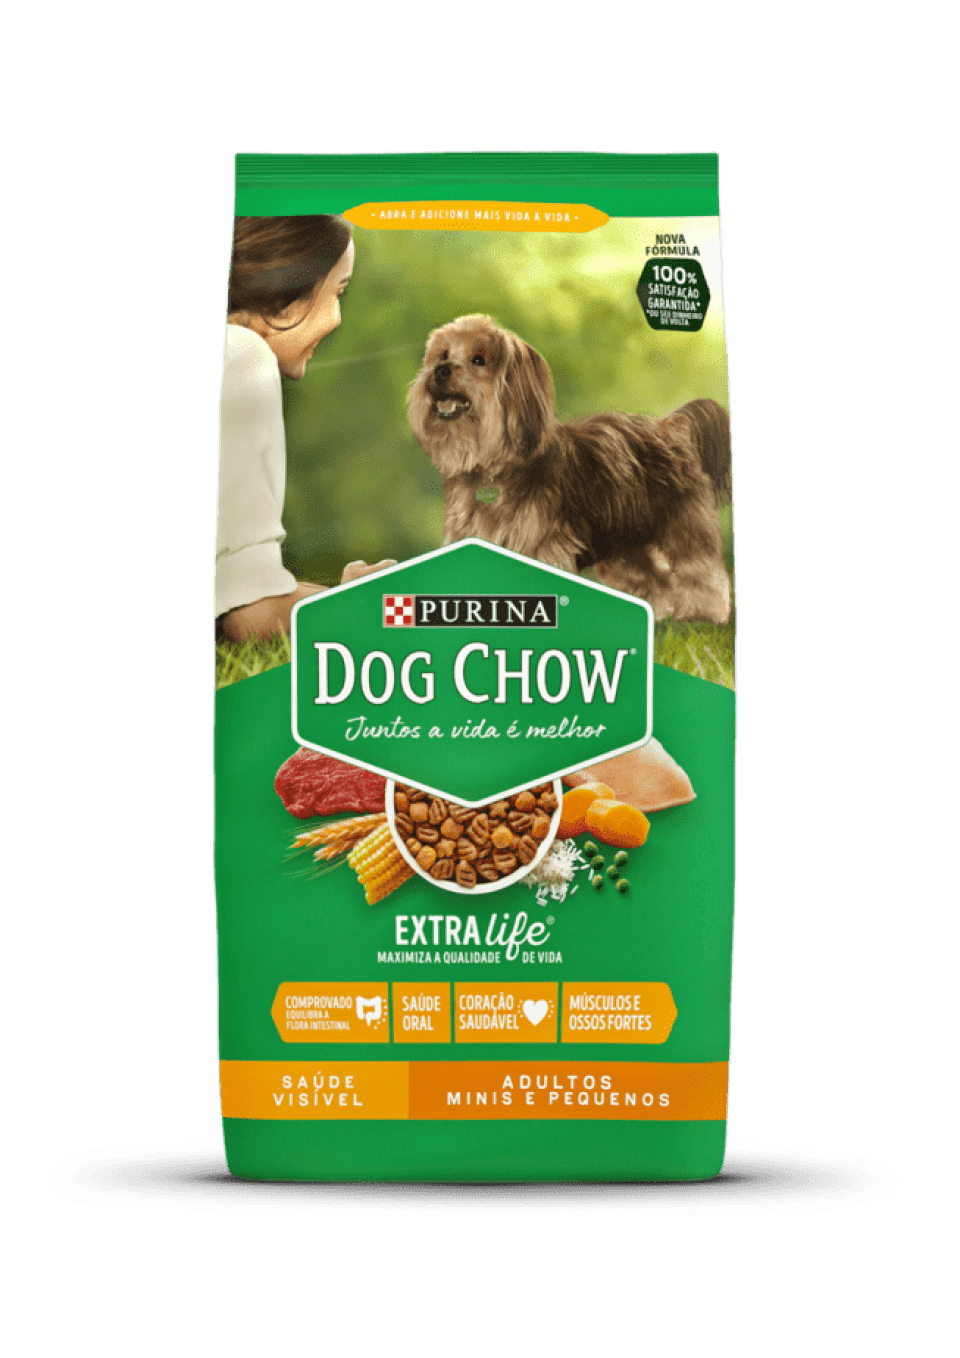 Je Dog Chow dobré krmivo pro psy? Přečtěte si o jeho hlavních složkách